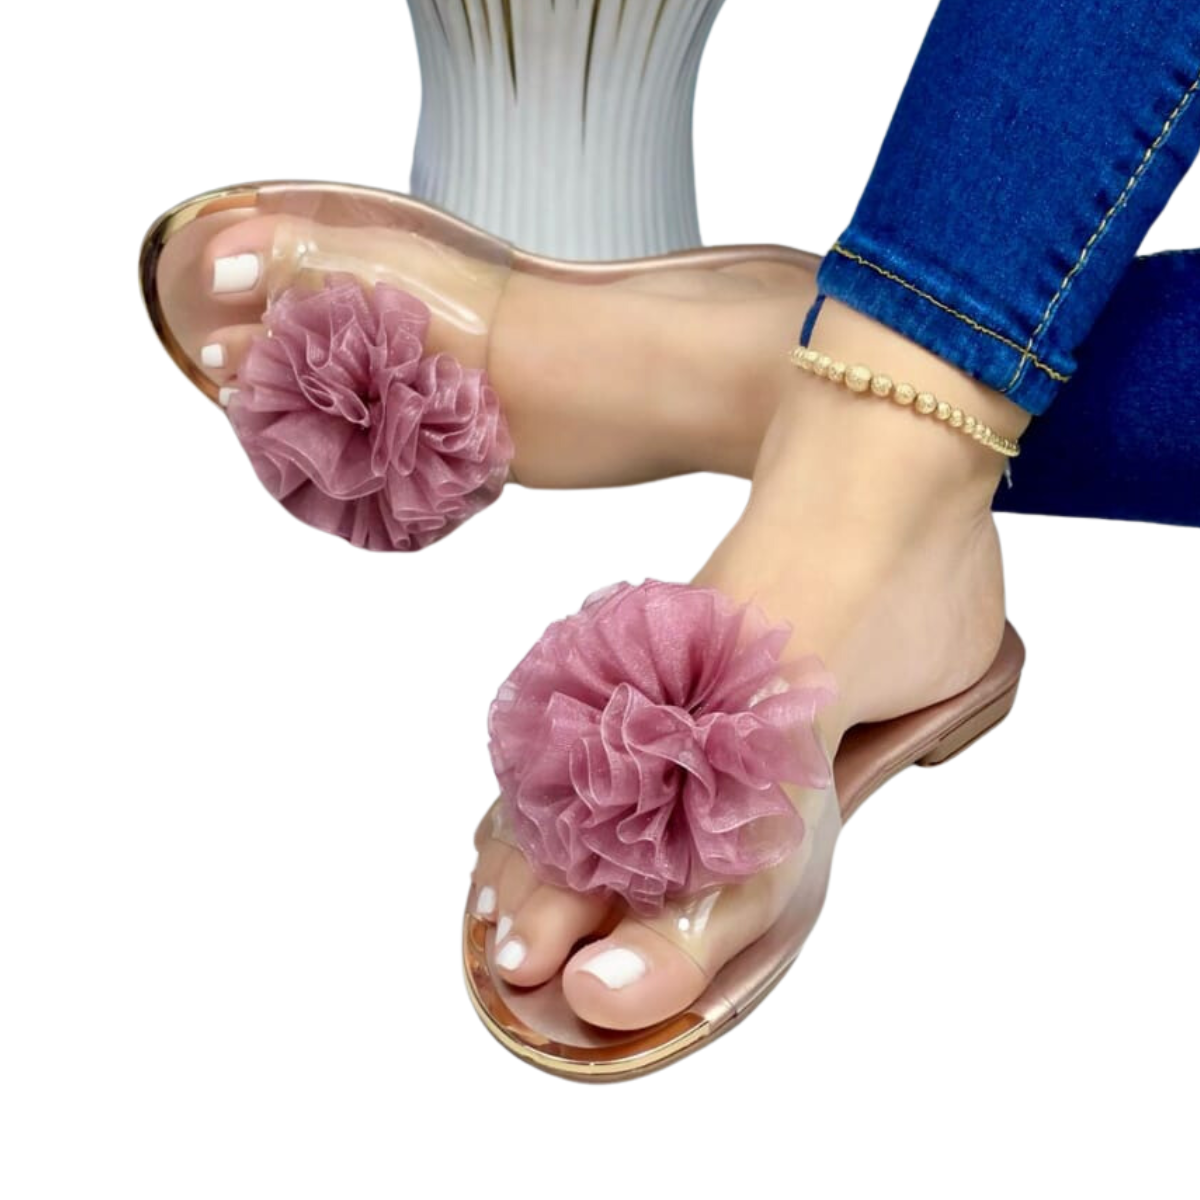 sandalias para mujer de moda comprar en onlineshoppingcenterg Colombia centro de compras en linea osc